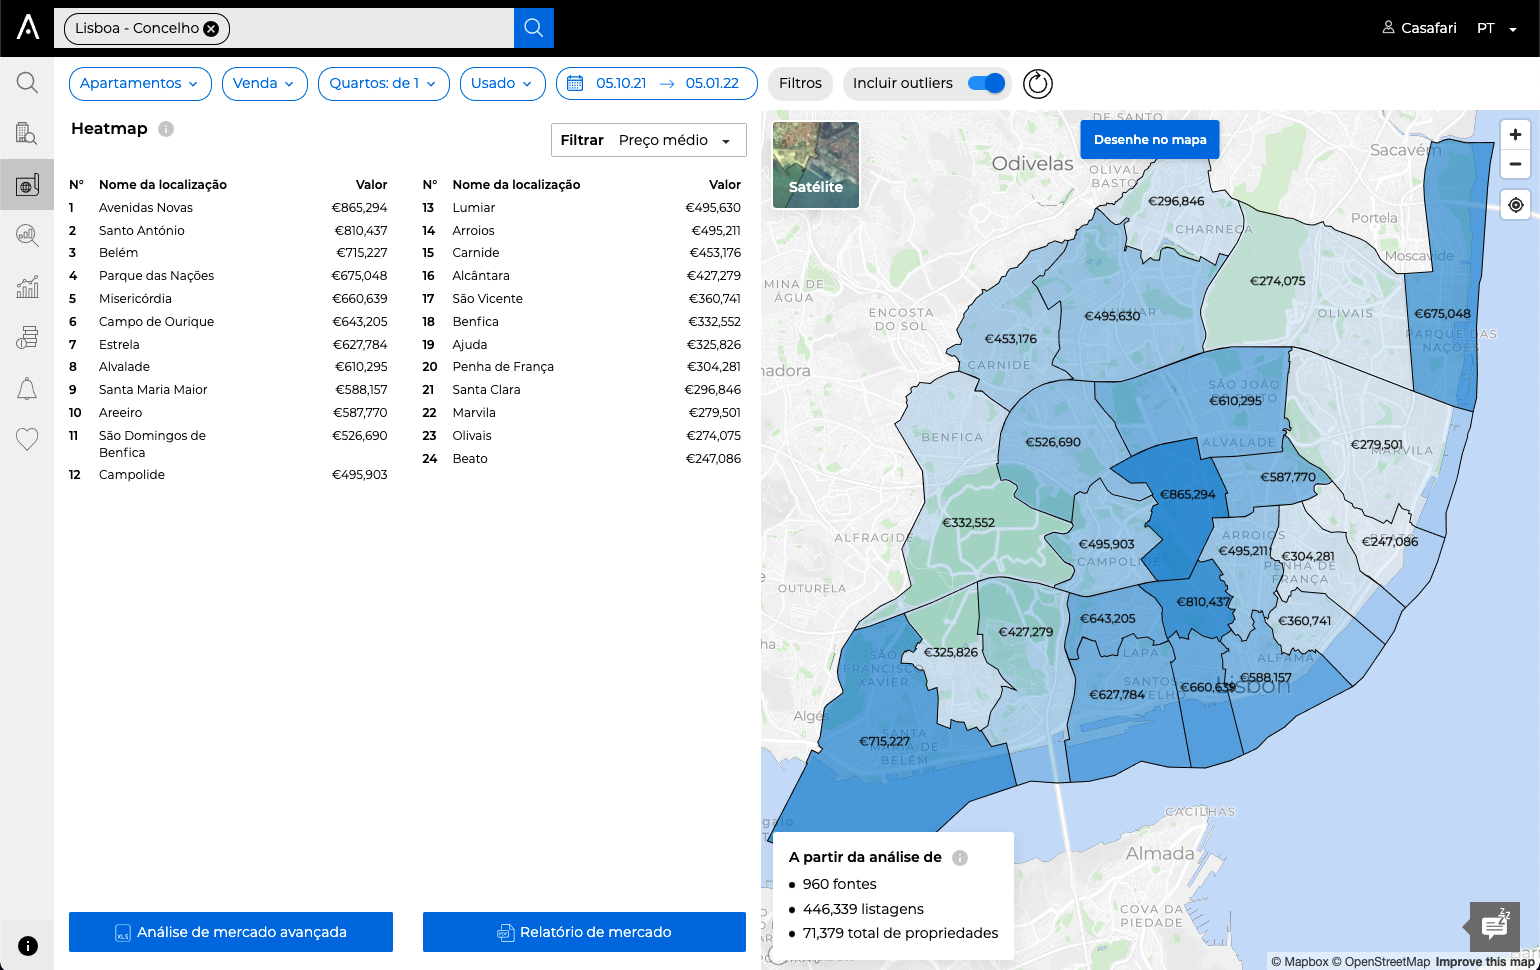 Mapa de calor mostrando as áreas mais caras e mais acessíveis da cidade dentro da CASAFARI Market Analytics